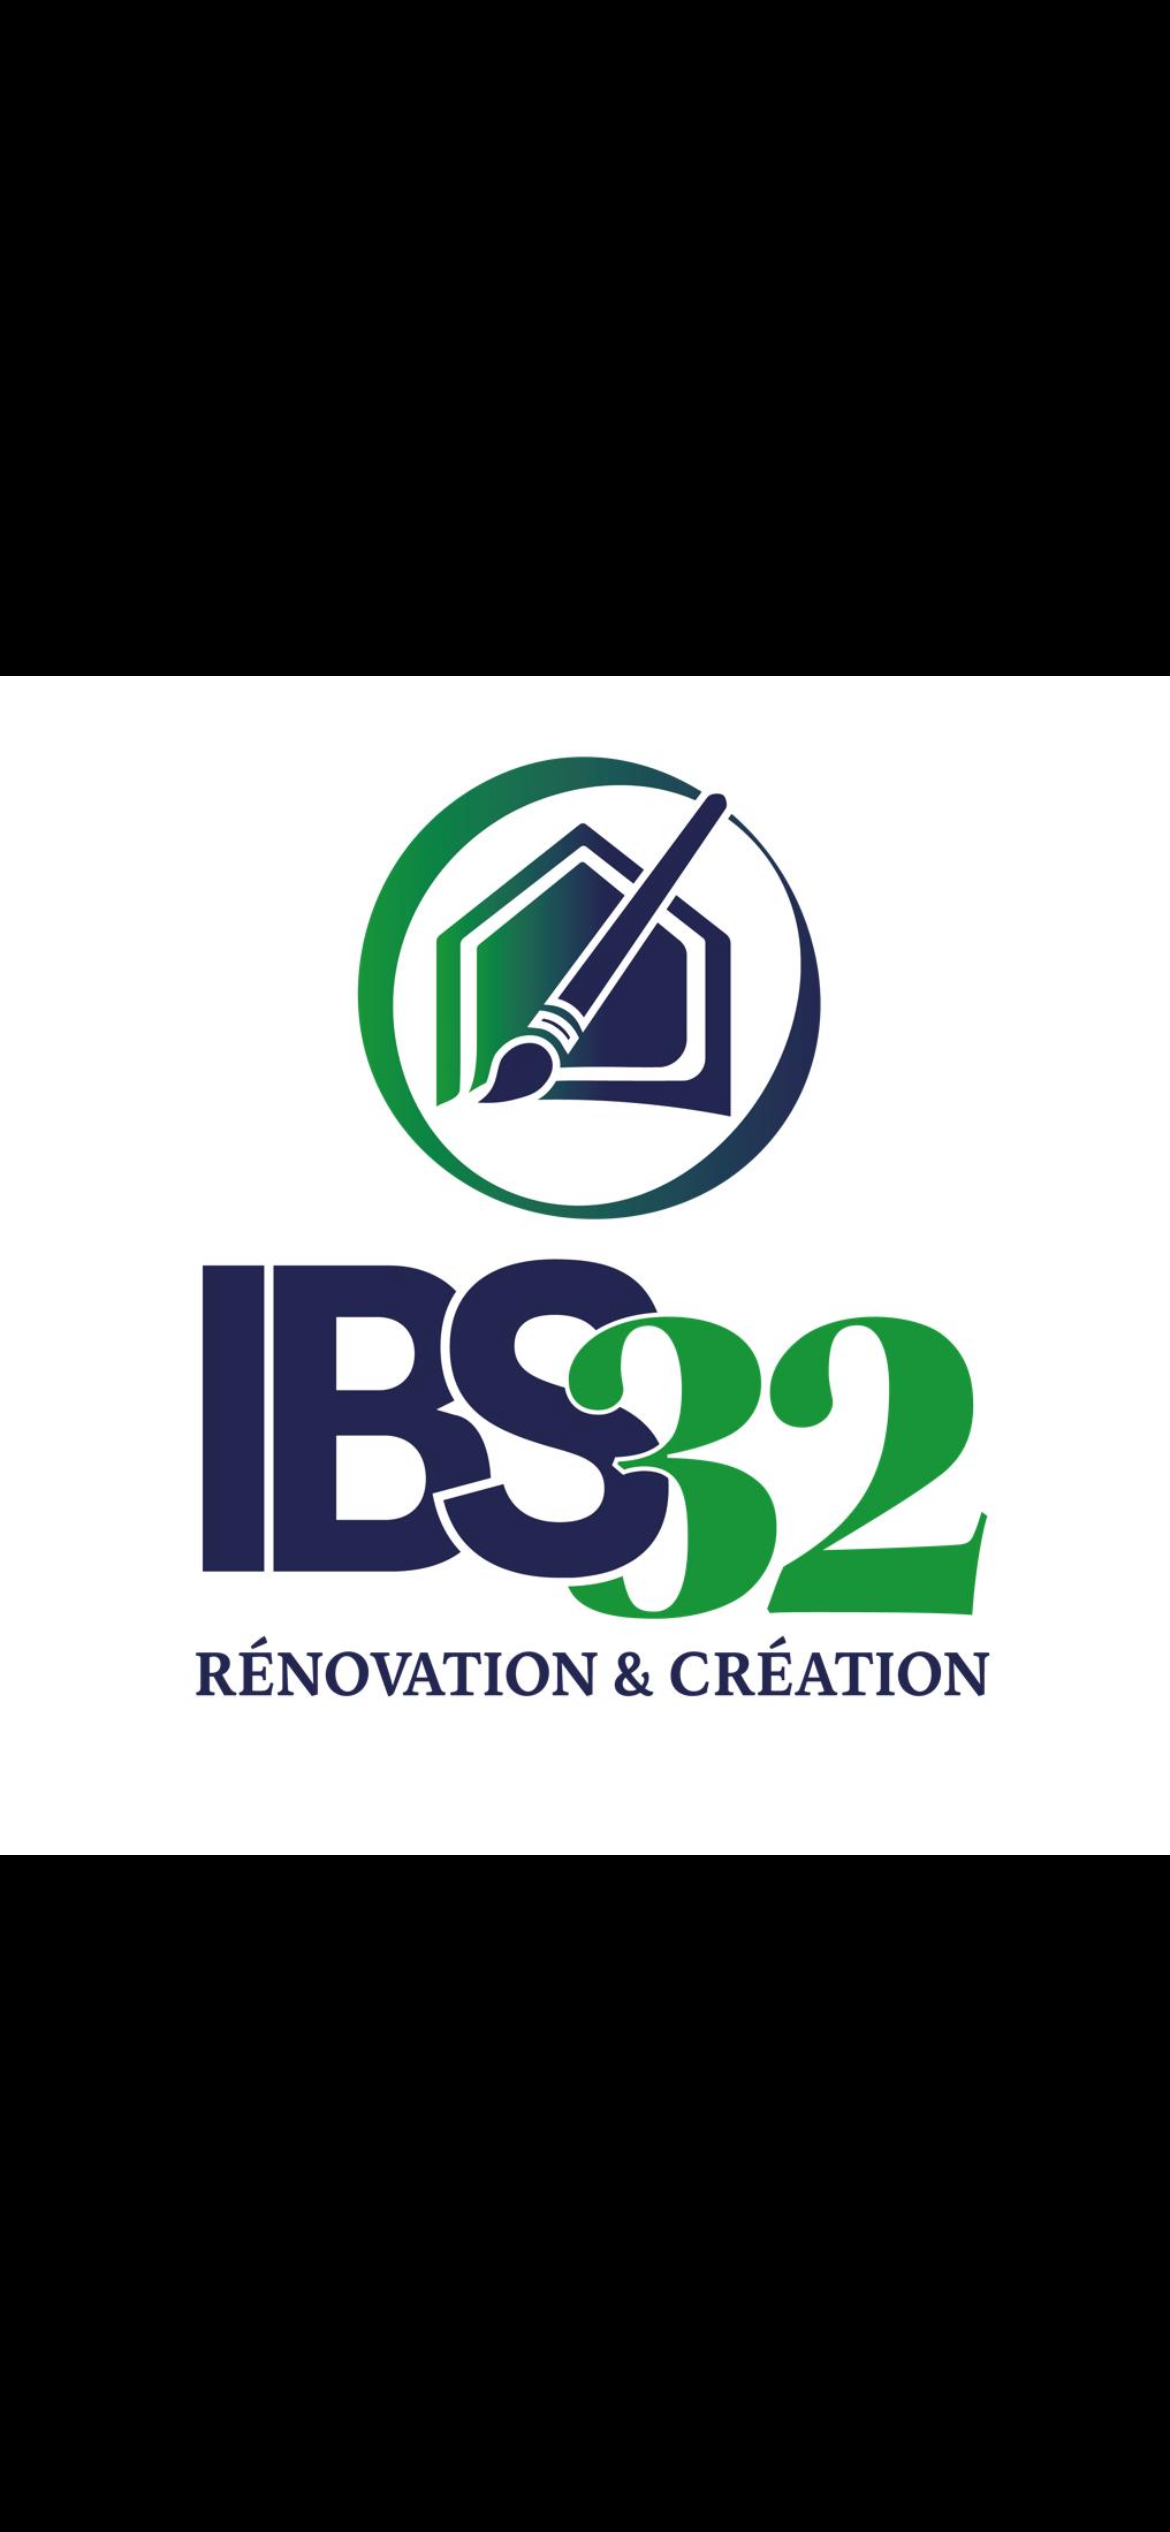 Logo de Ingrid Bunel Solutions Ibs32, société de travaux en Fourniture et pose de parquets flottants